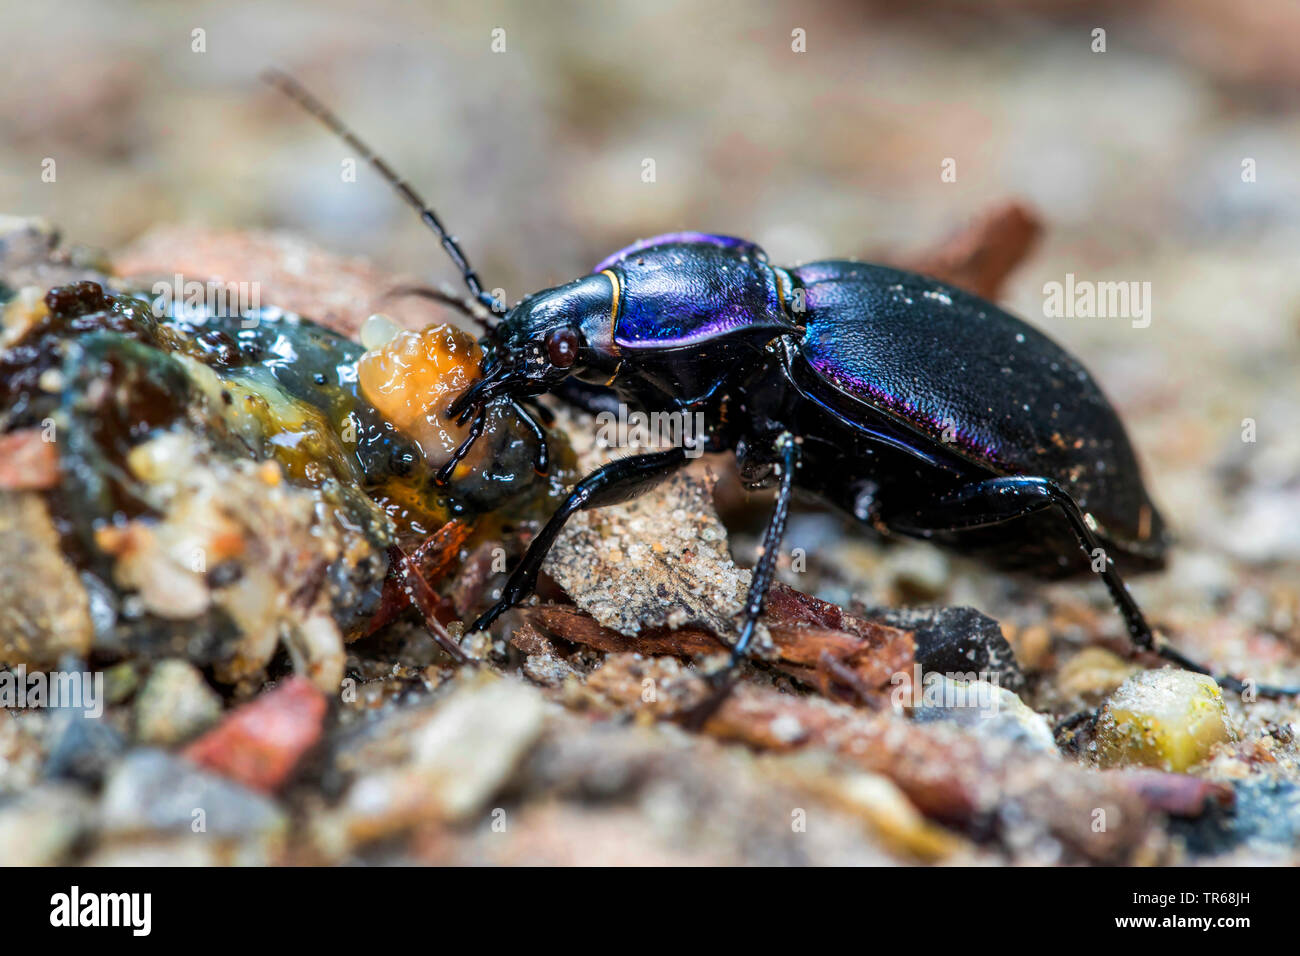 Massa viola beetle (Carabus tendente al violaceo), alimentazione di una lumaca morta, Germania, Meclemburgo-Pomerania Occidentale Foto Stock